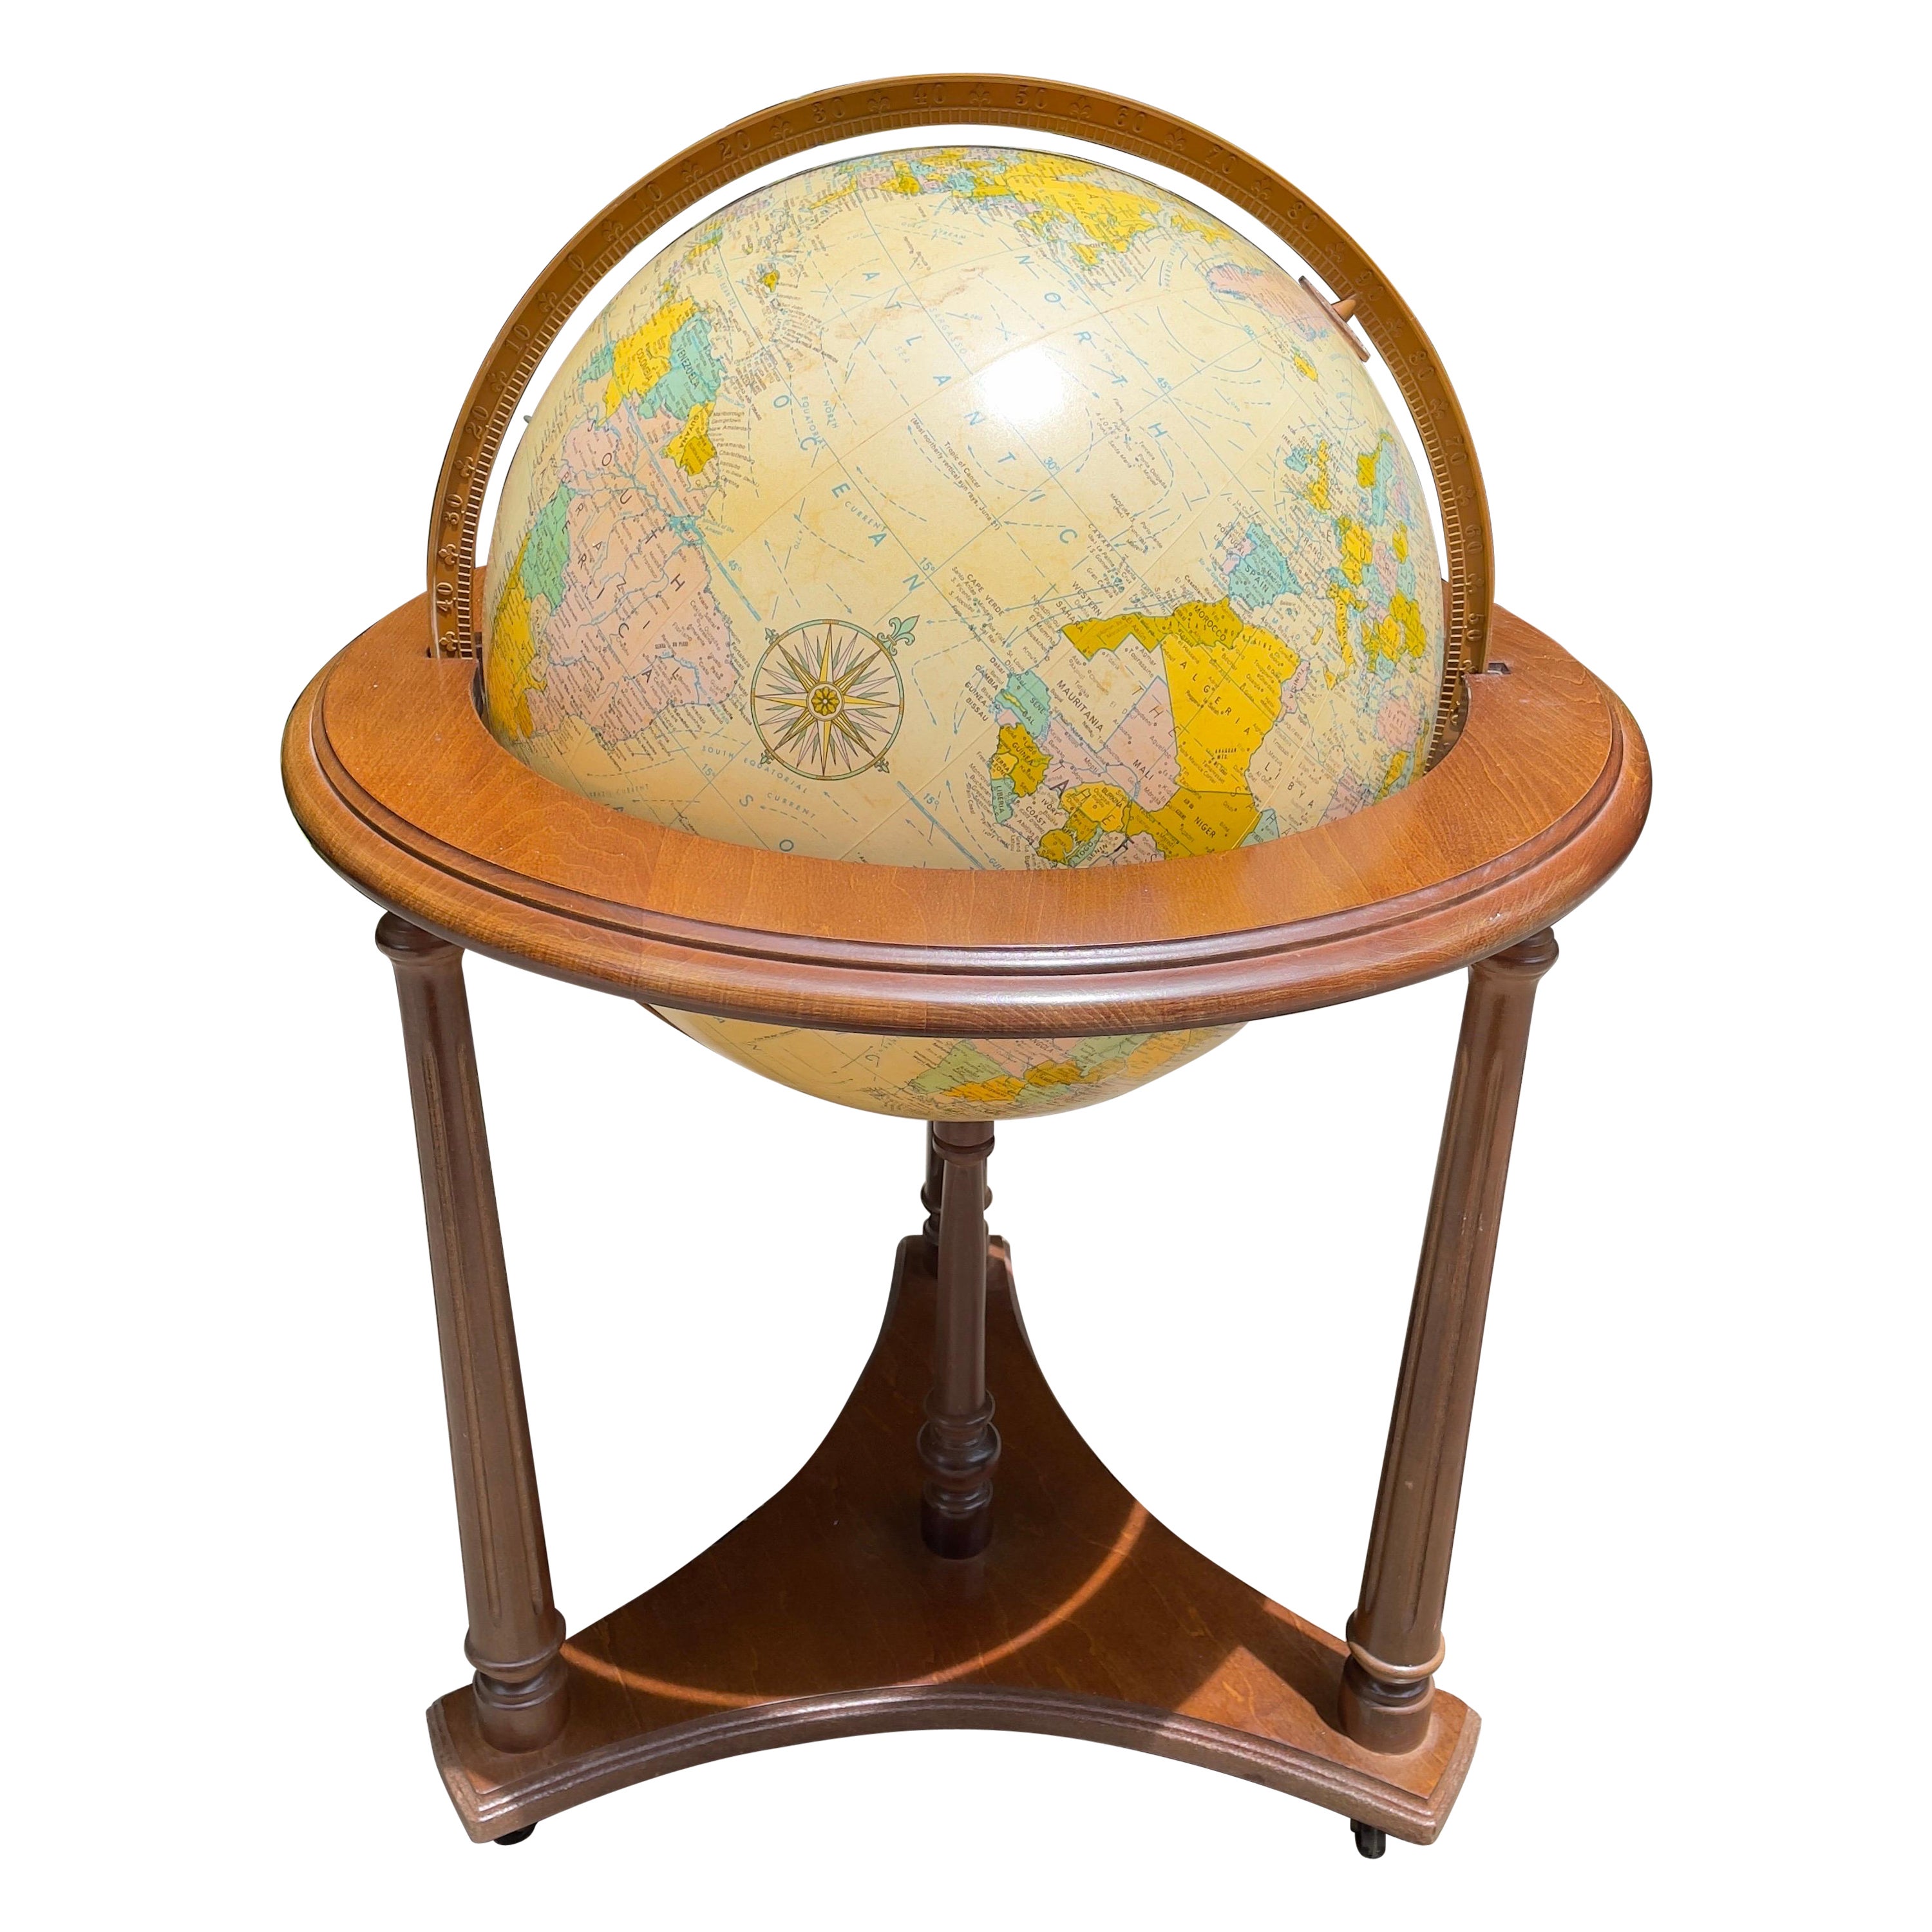 20. Jahrhundert Beleuchtete Replogle Globes, Inc. Globus und Stand- 2 Pieces